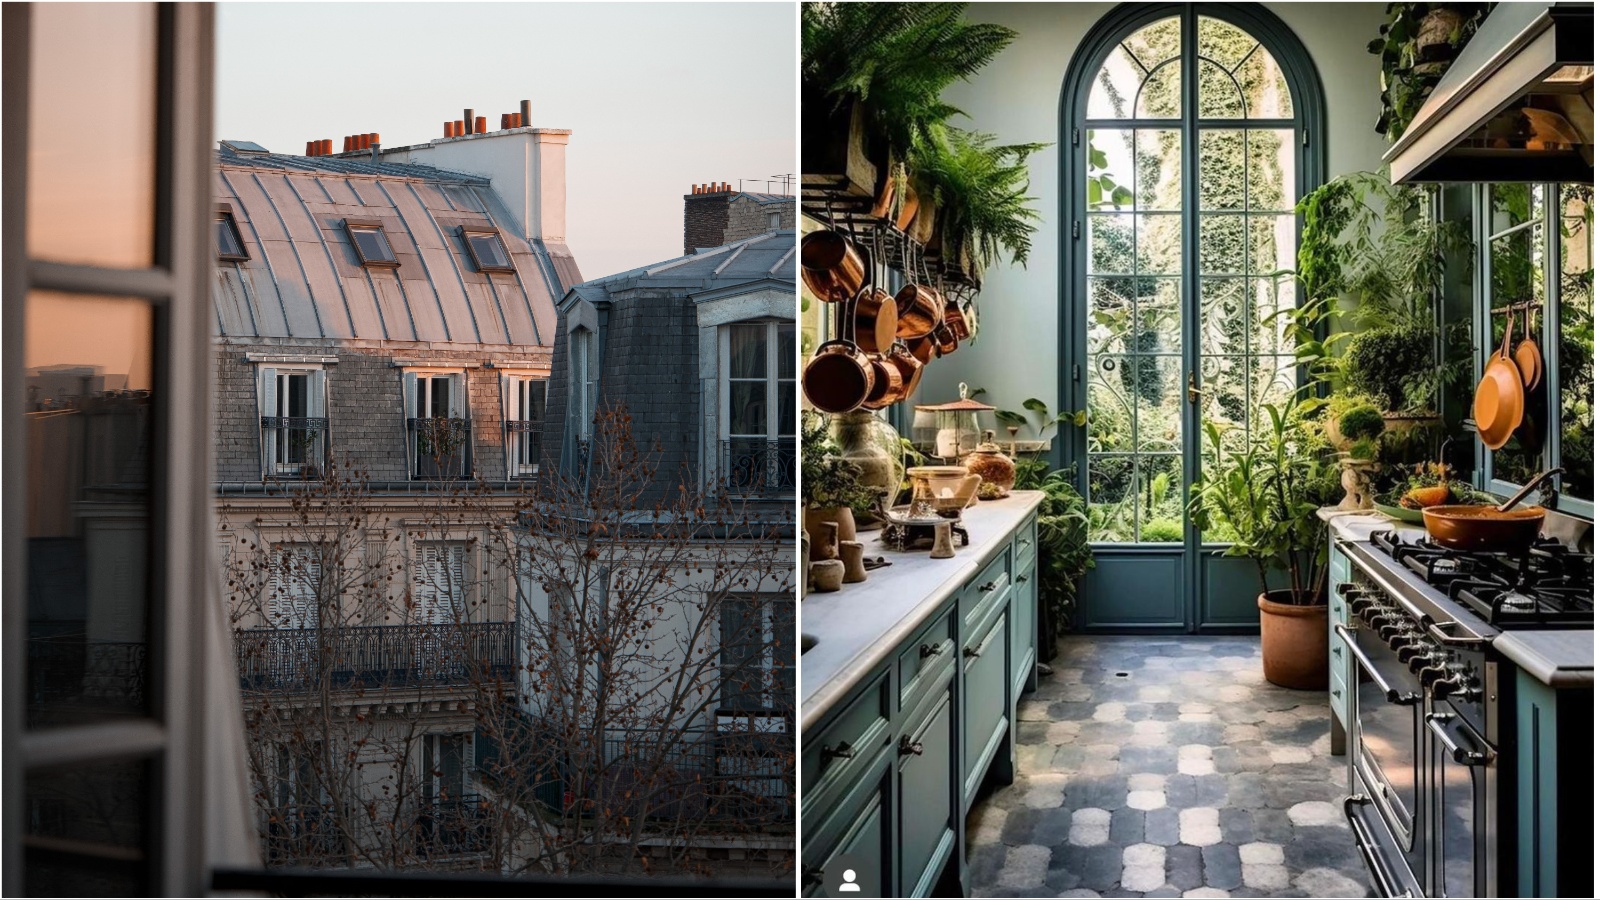 Ovaj Instagram profil slavi stil francuskih interijera